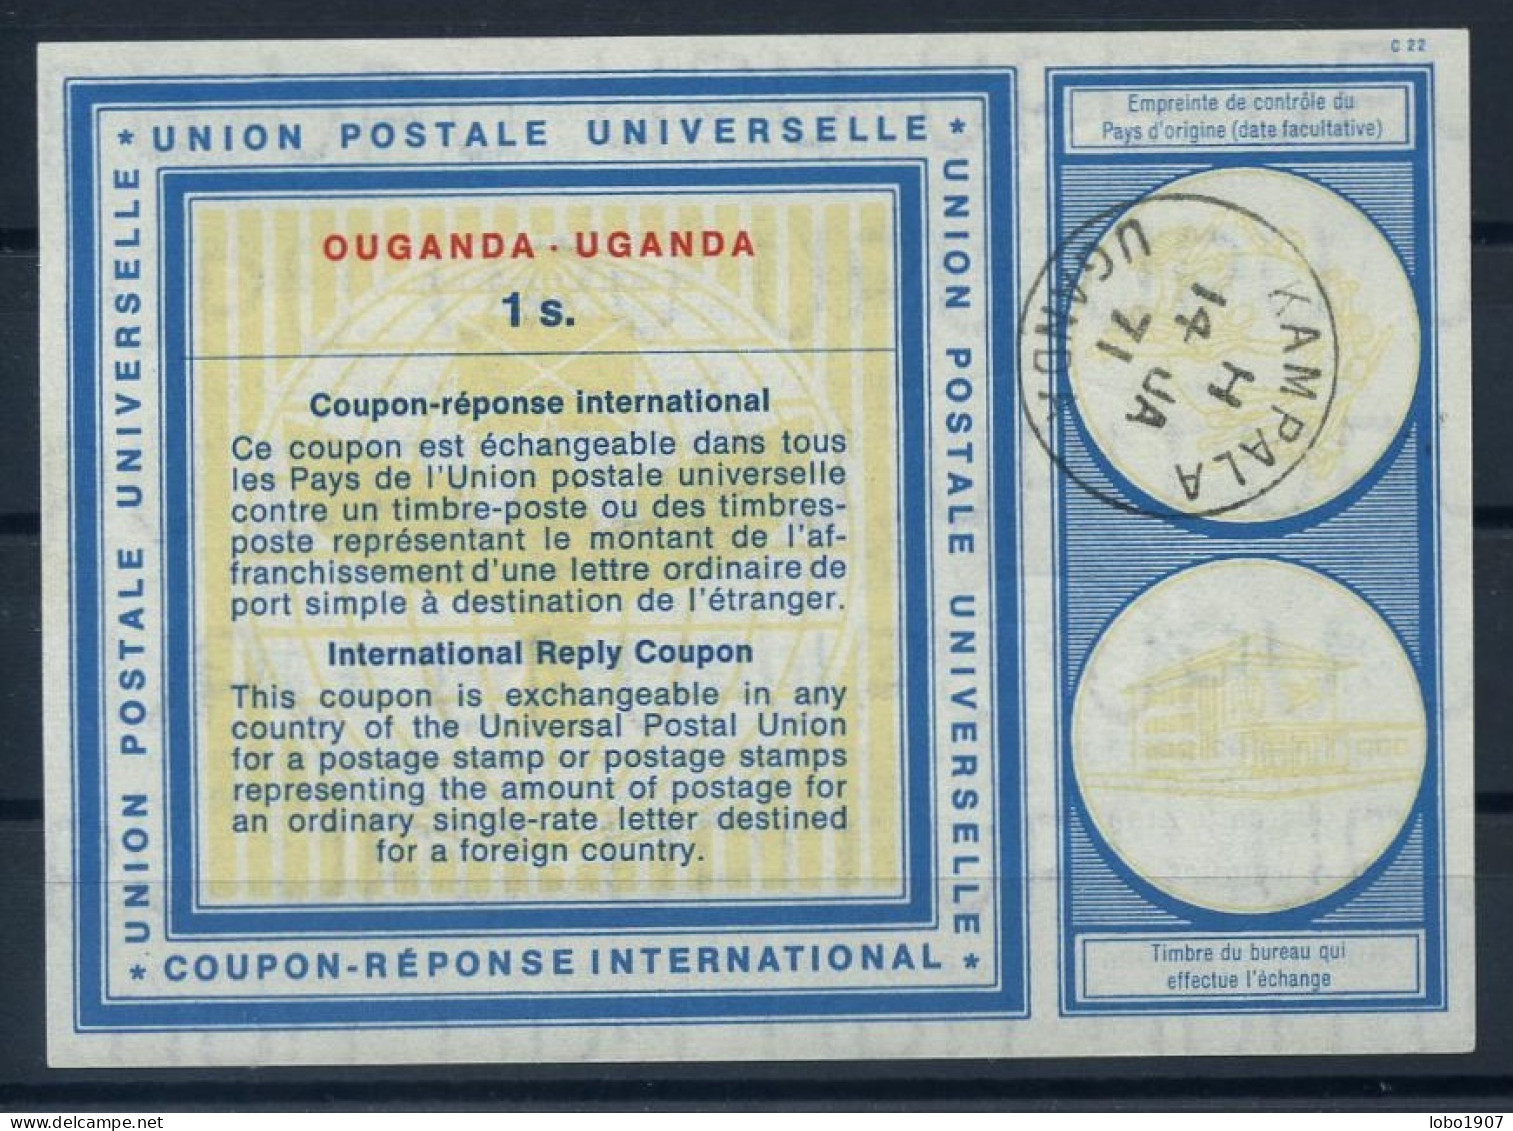 OUGANDA UGANDA  Vi19  1s.  International Reply Coupon Reponse Antwortschein IRC IAS  O KAMPALA UGANDA 14.01.71 - Kenya, Ouganda & Tanganyika